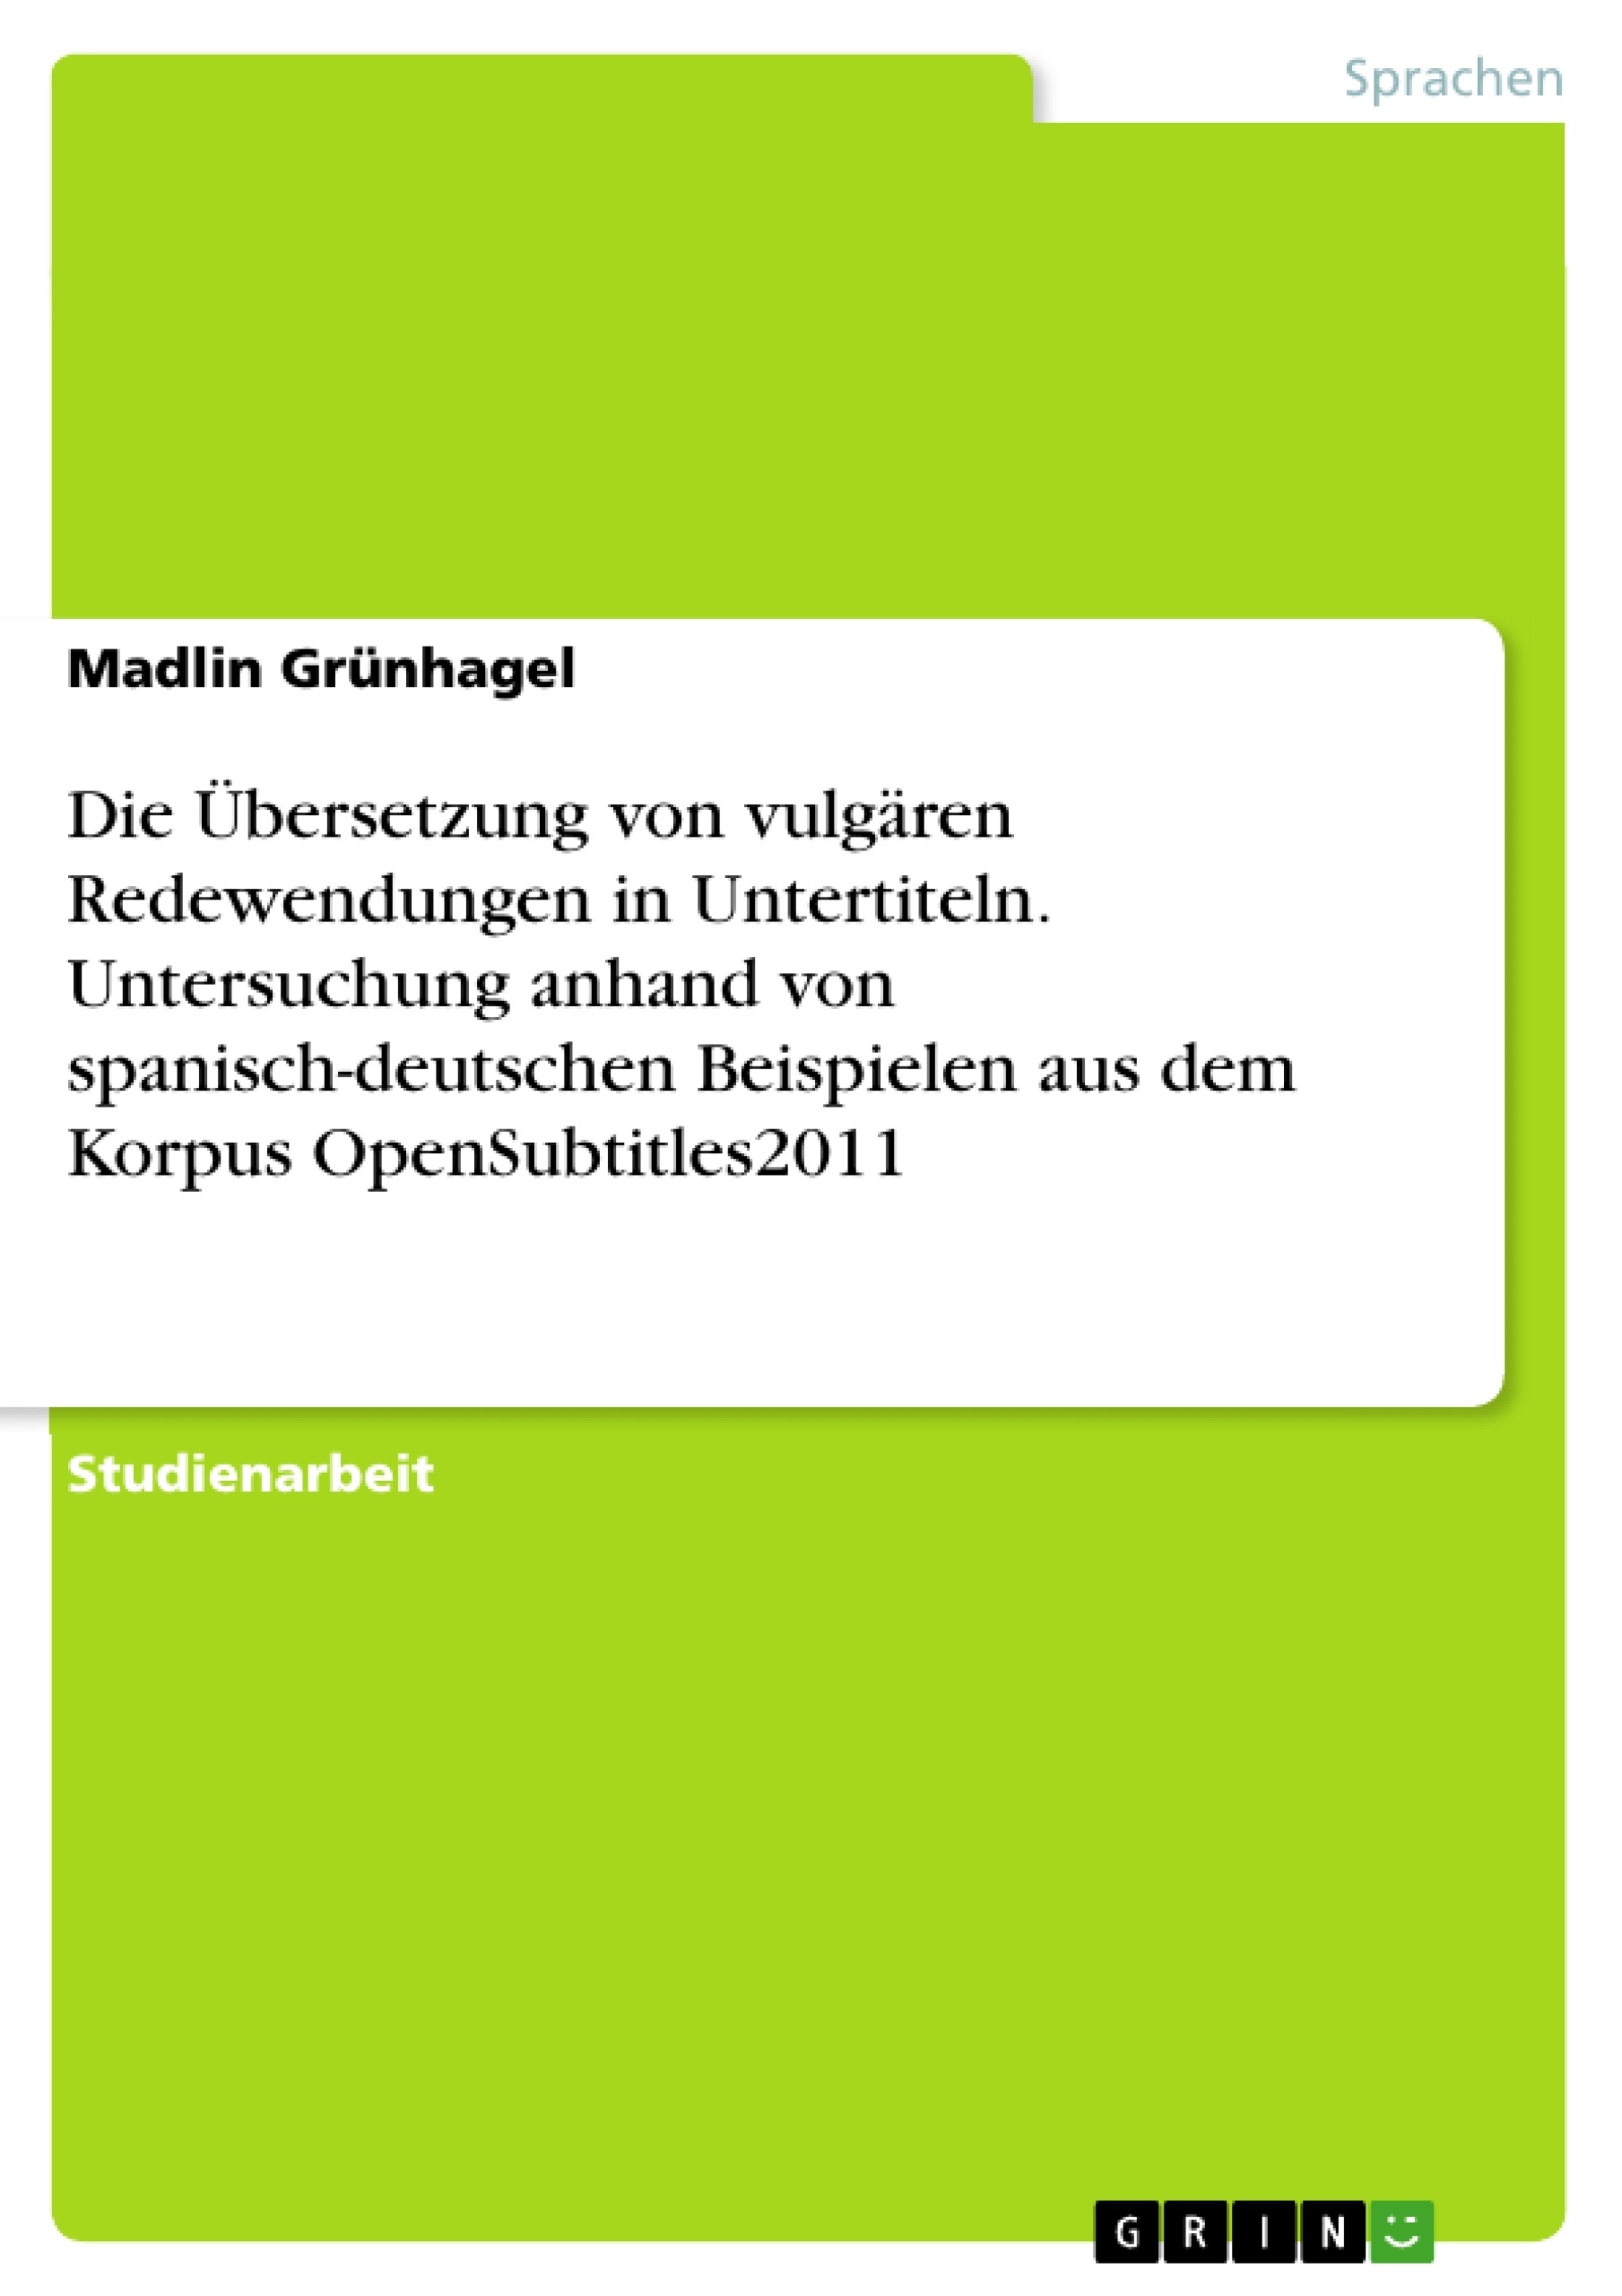 Titel: Die Übersetzung von vulgären Redewendungen in Untertiteln. Untersuchung anhand von spanisch-deutschen Beispielen aus dem Korpus OpenSubtitles2011